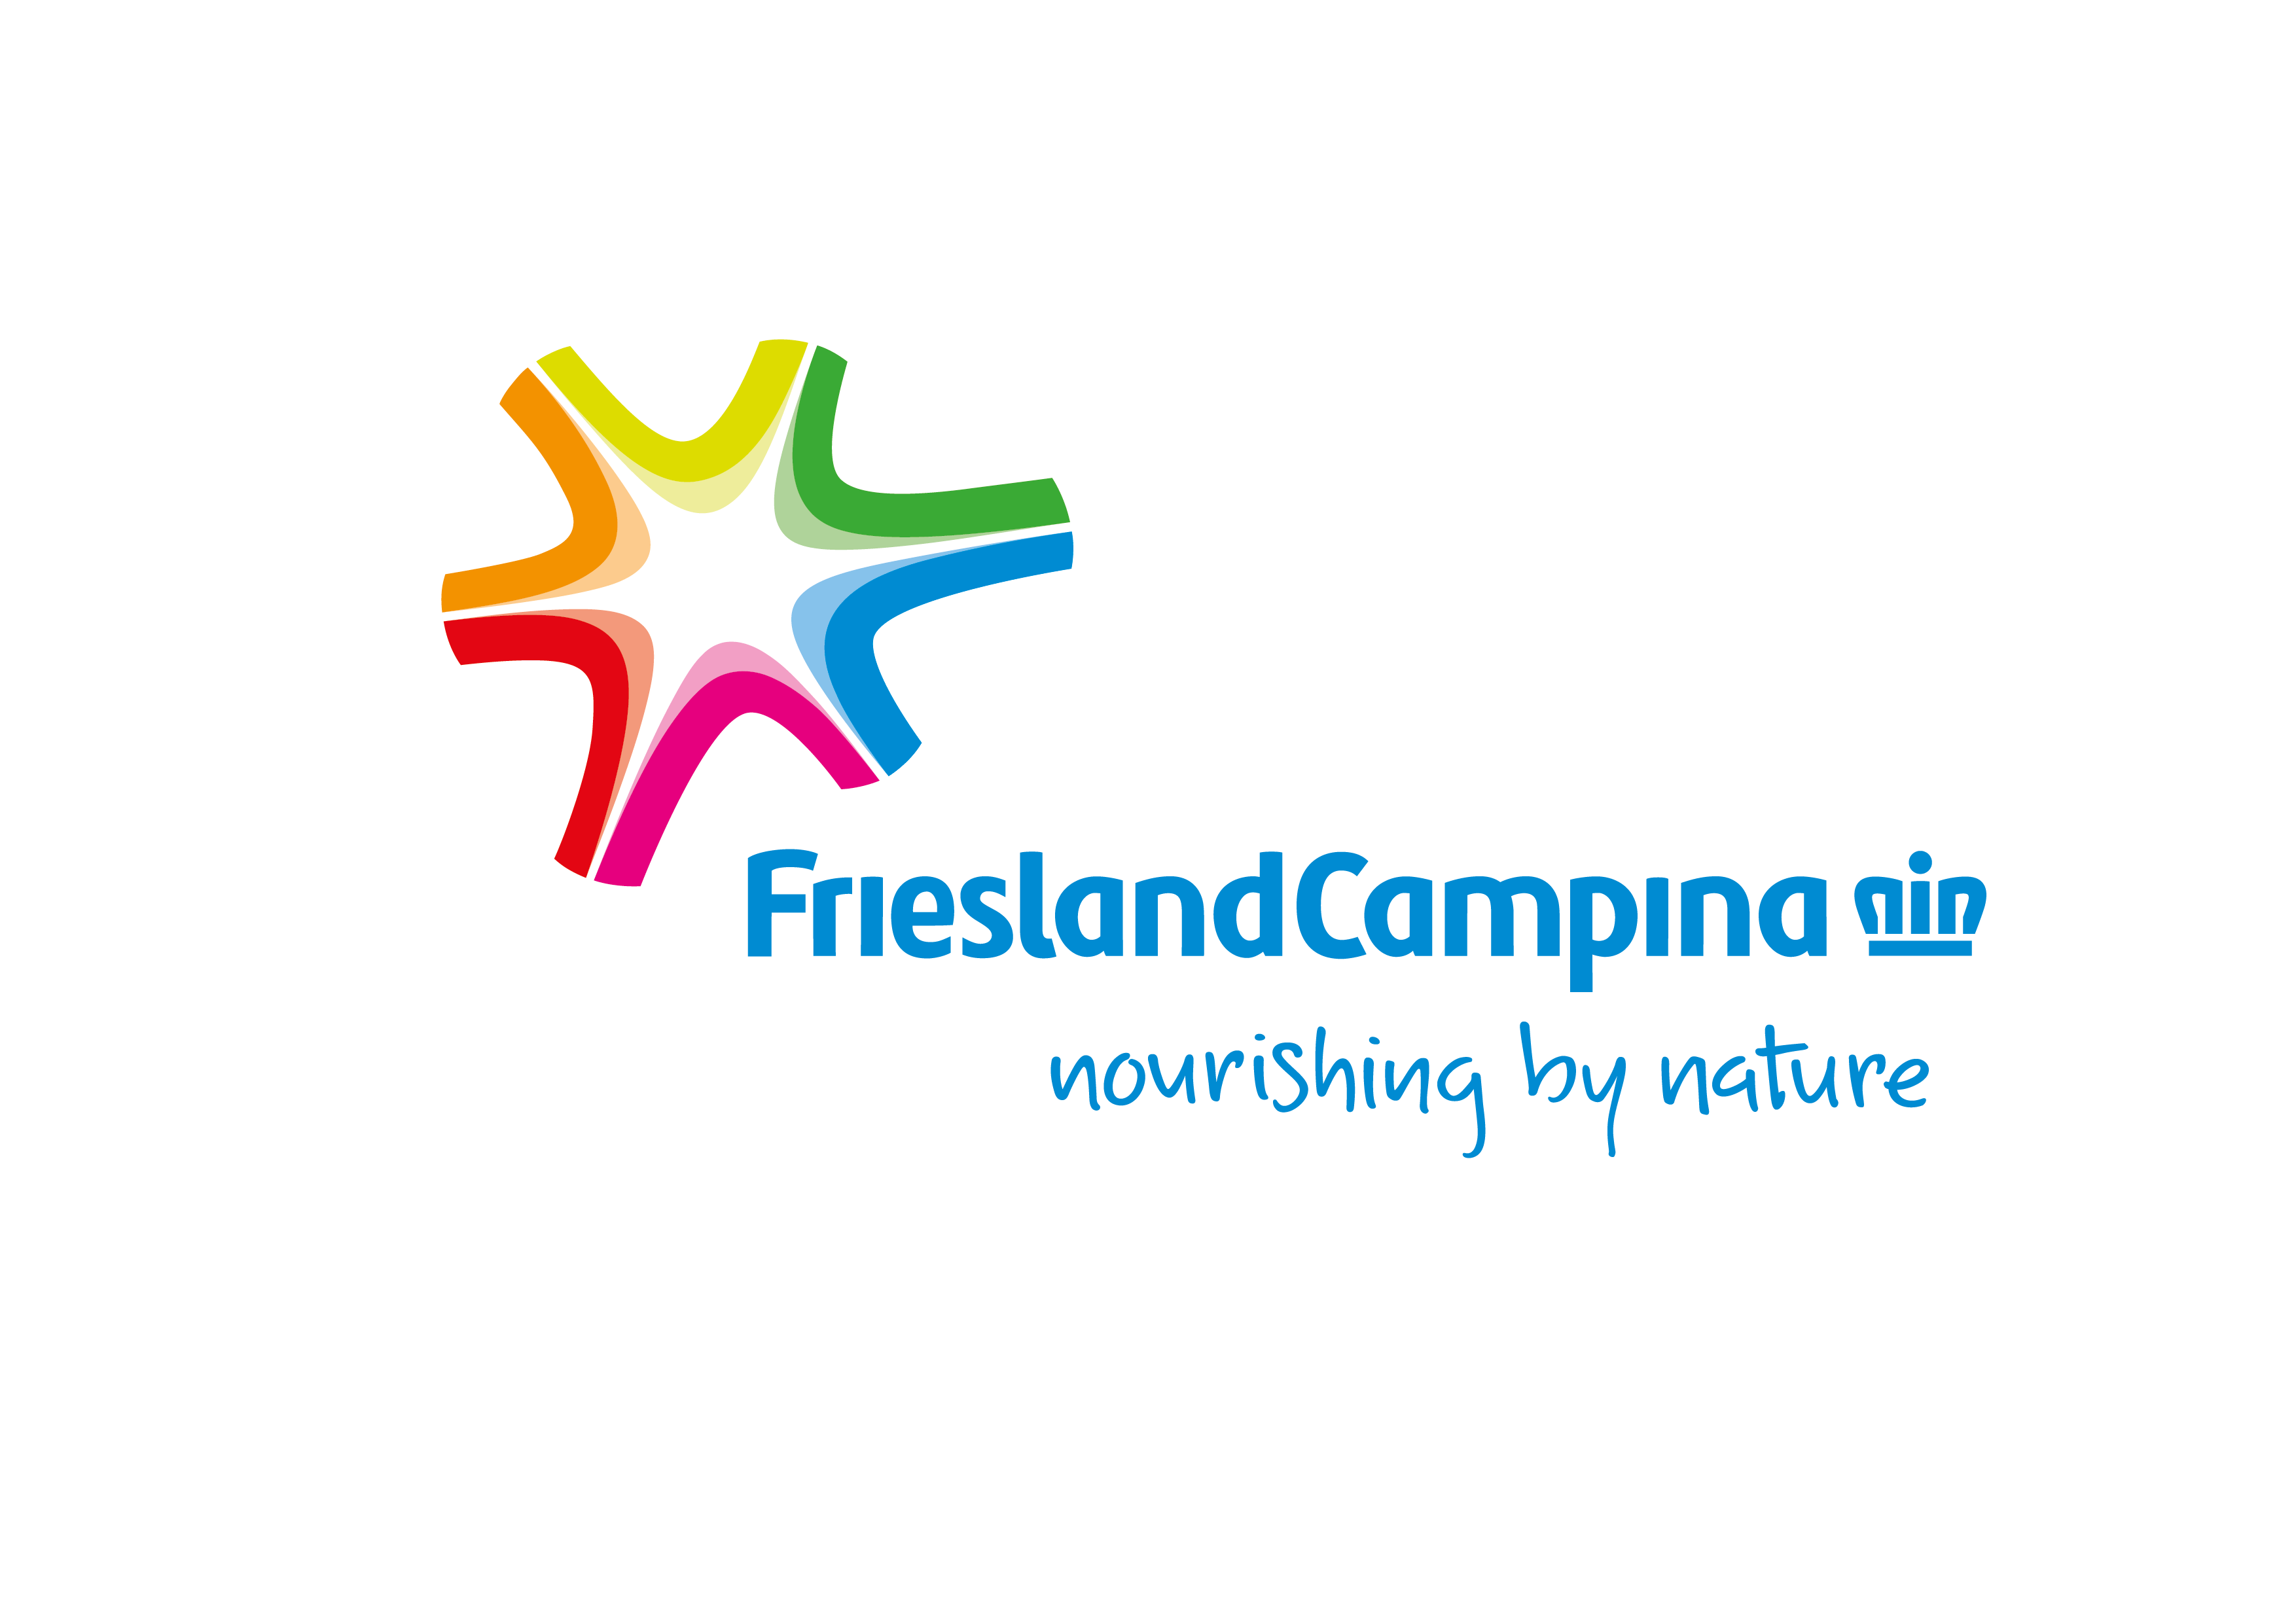 Frieslandcampina phát triển kinh doanh và tạo lập giá trị chung cho cộng đồng